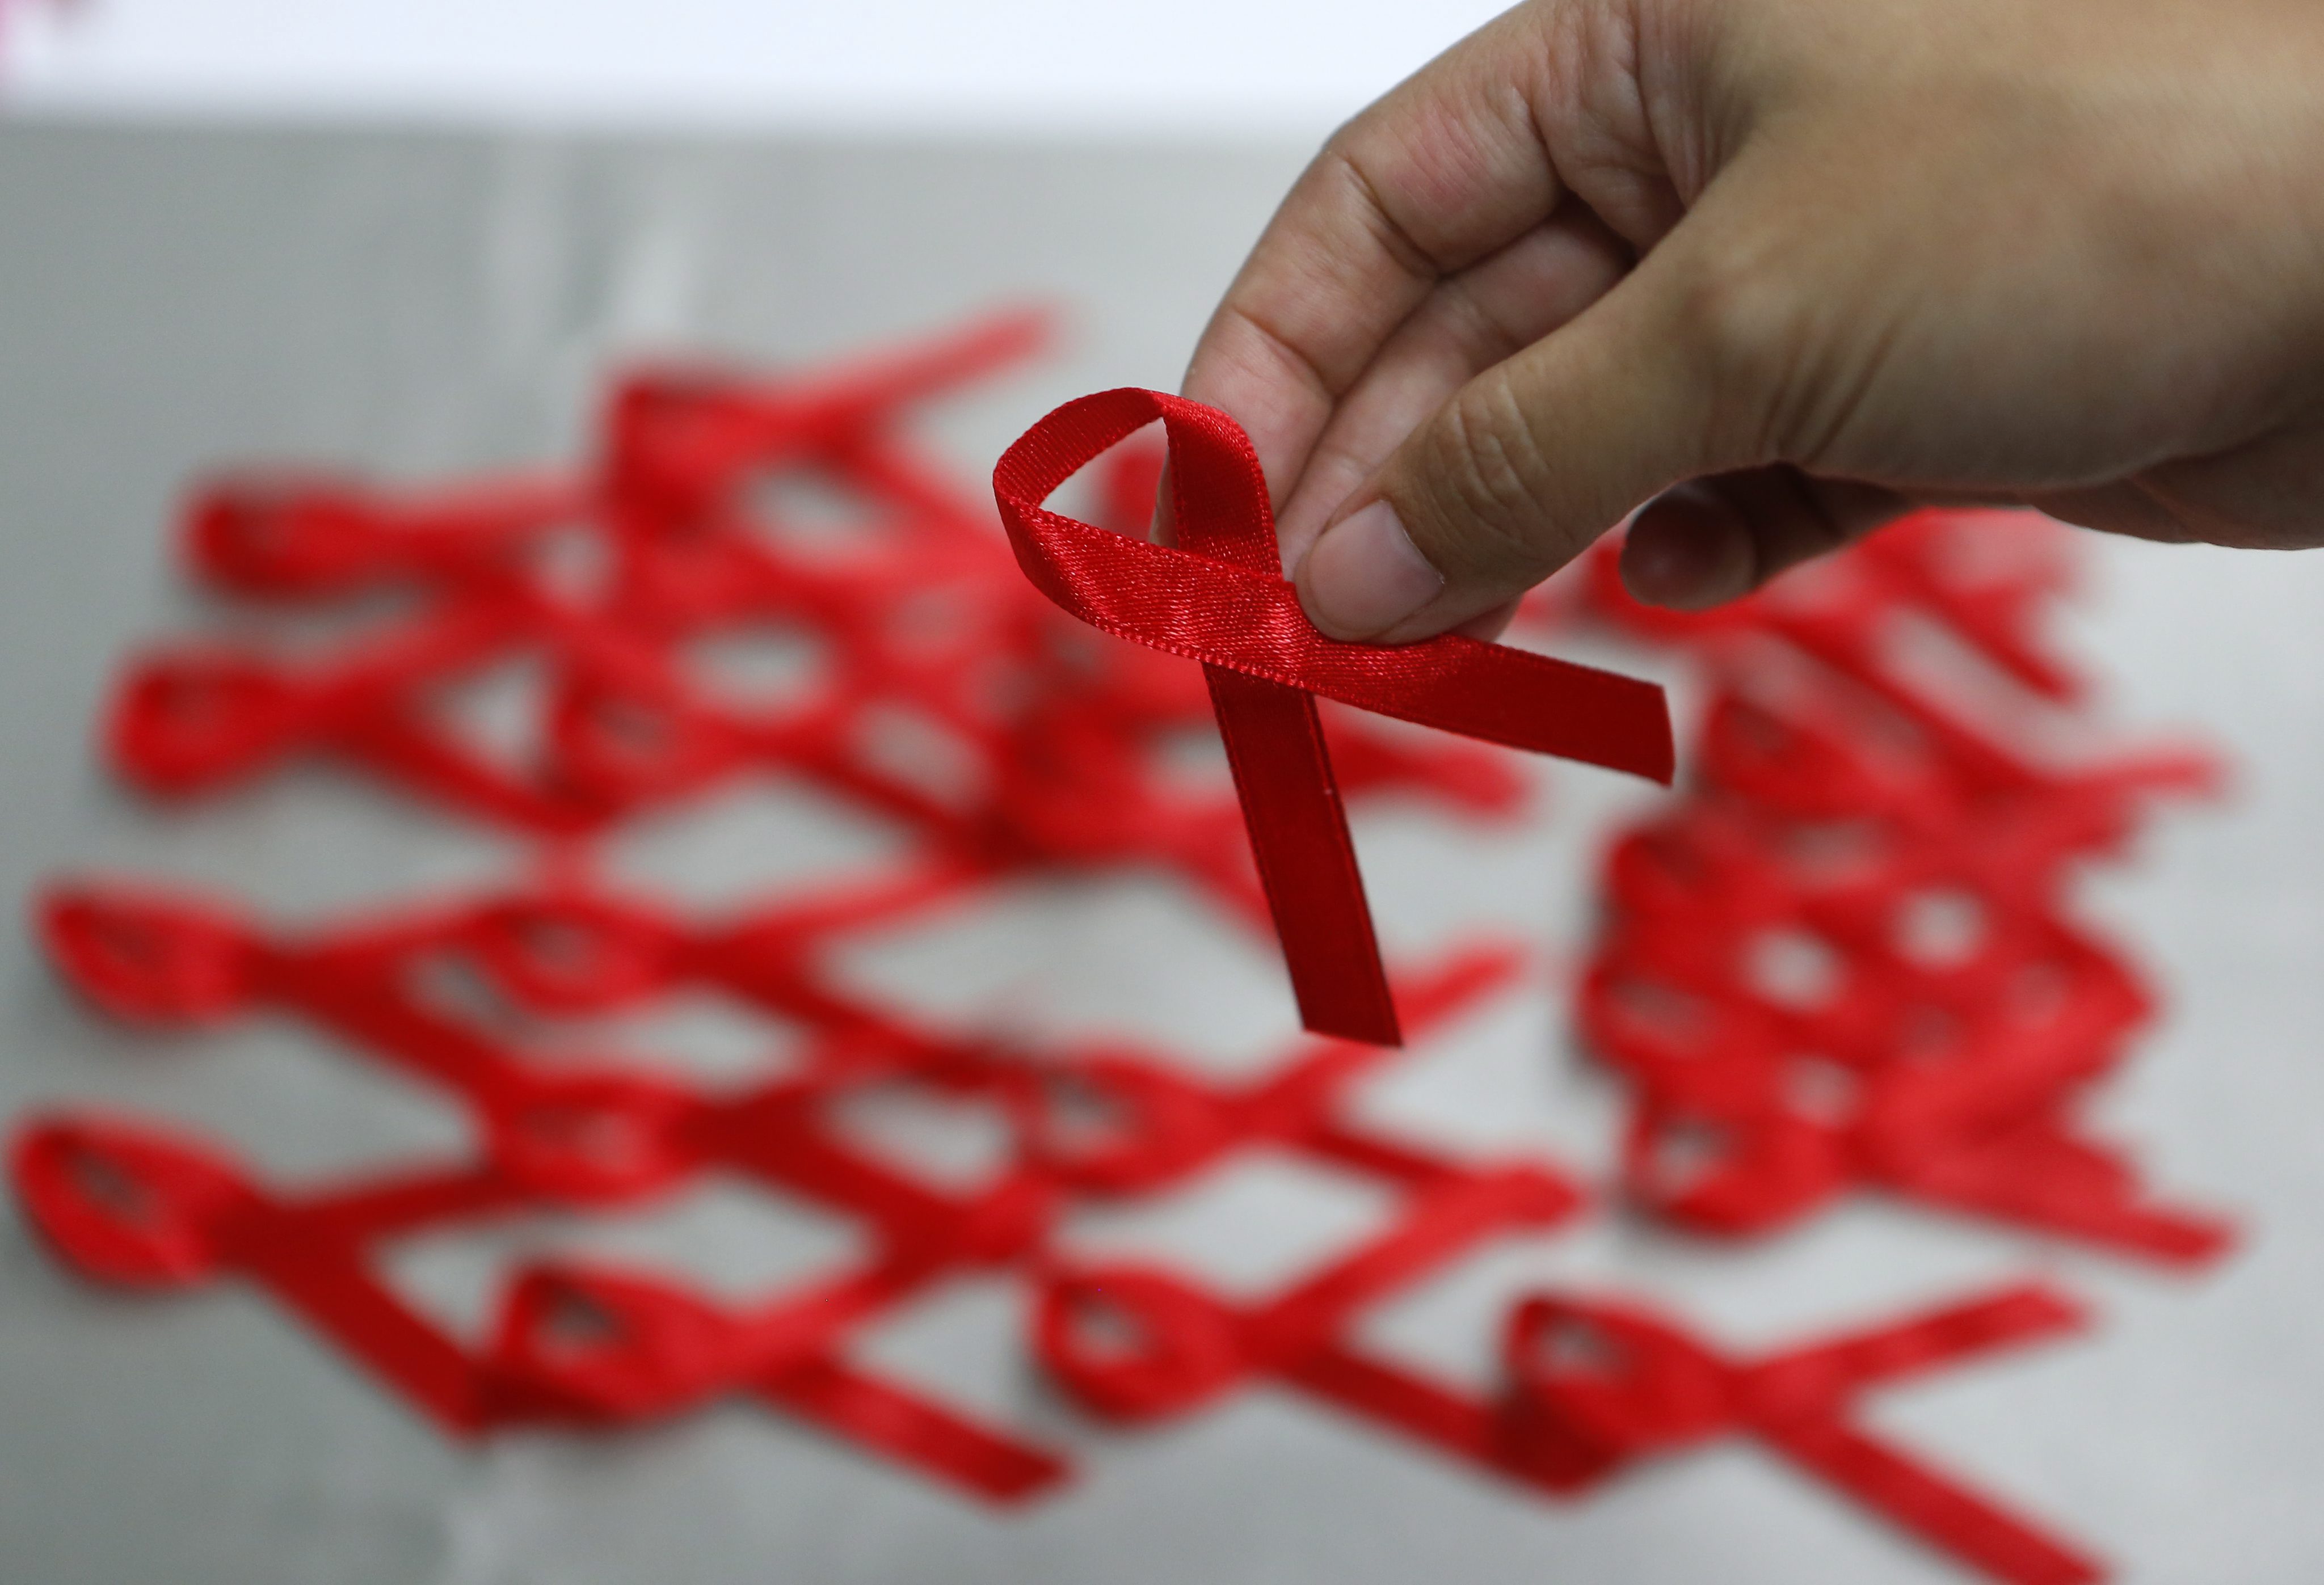 ΠΟΥ: Ο HIV εξαπλώνεται ανησυχητικά γρήγορα στην Ευρώπη